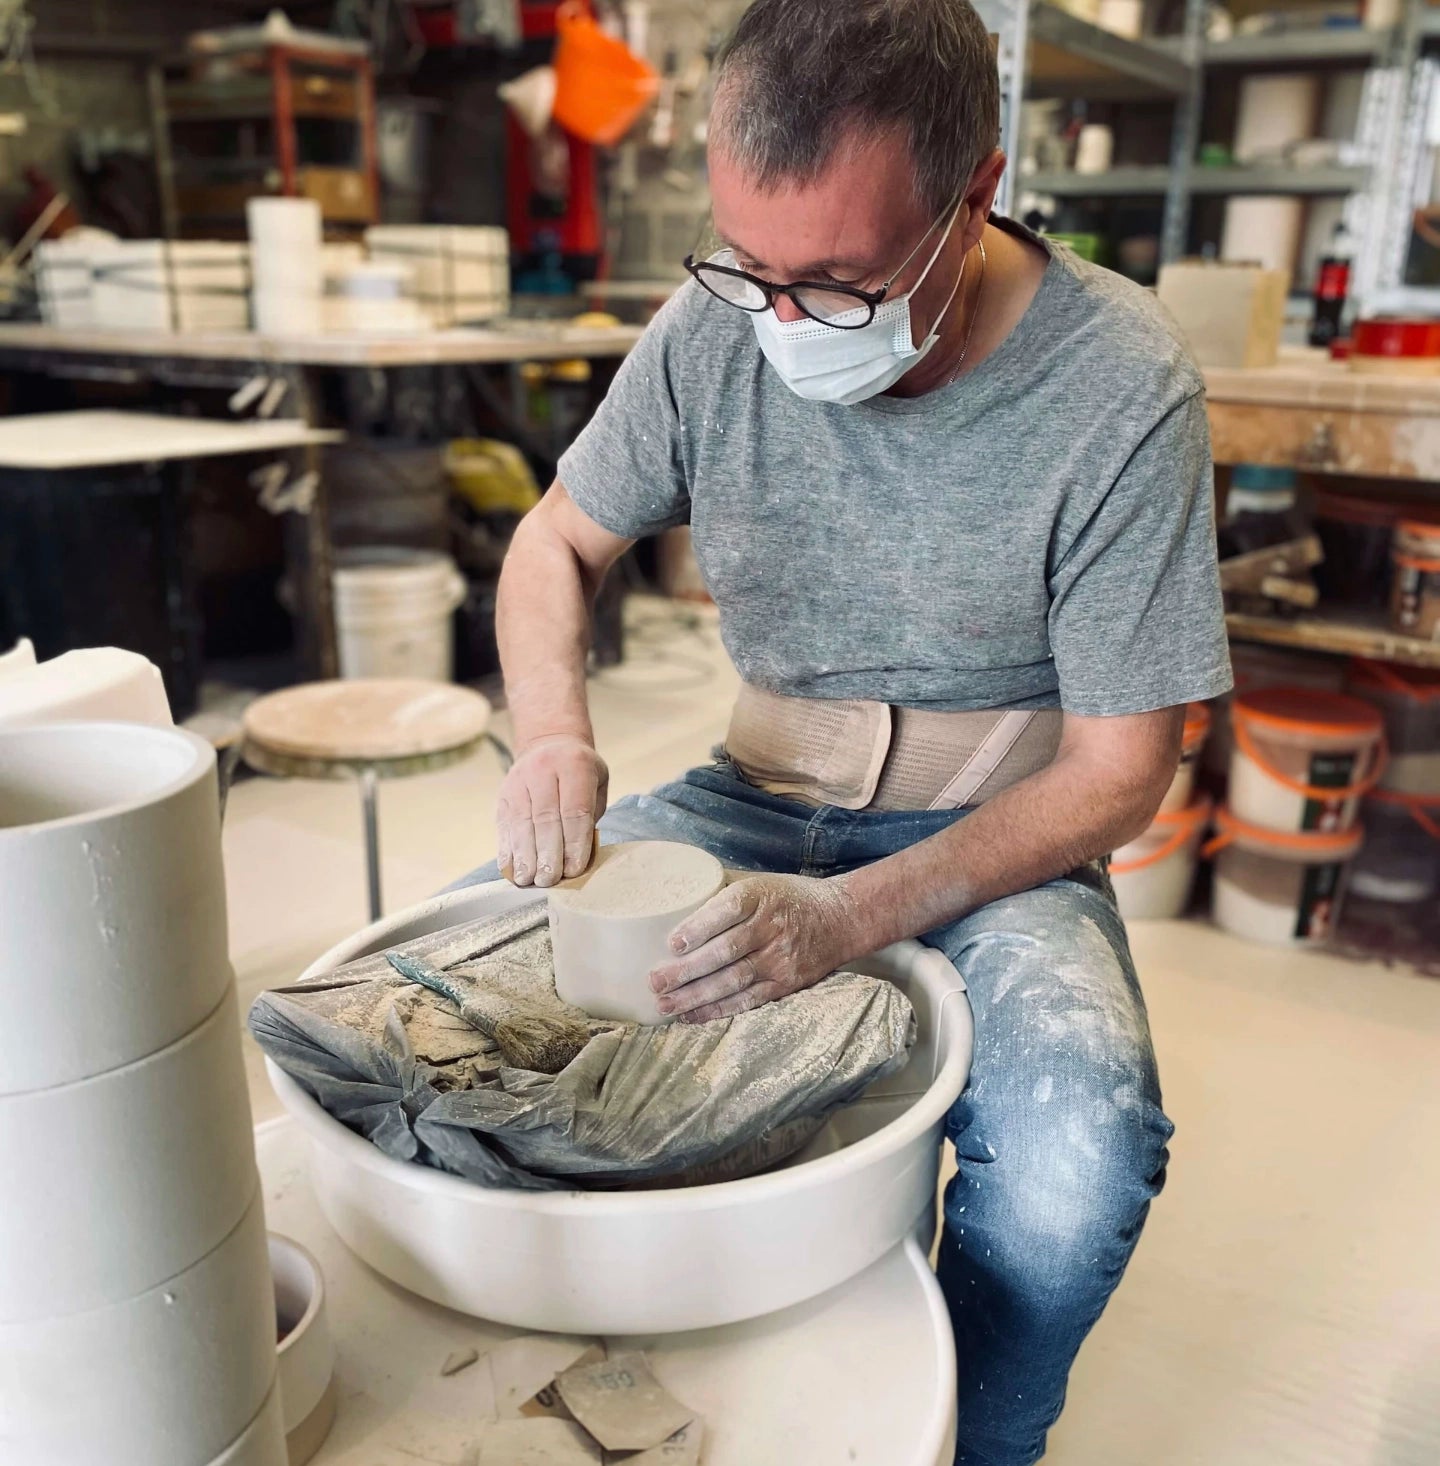 Notre céramiste artisan ponce les récipients en céramique avant de les émailler, pour ensuite les mettre dans le four à haute température. 